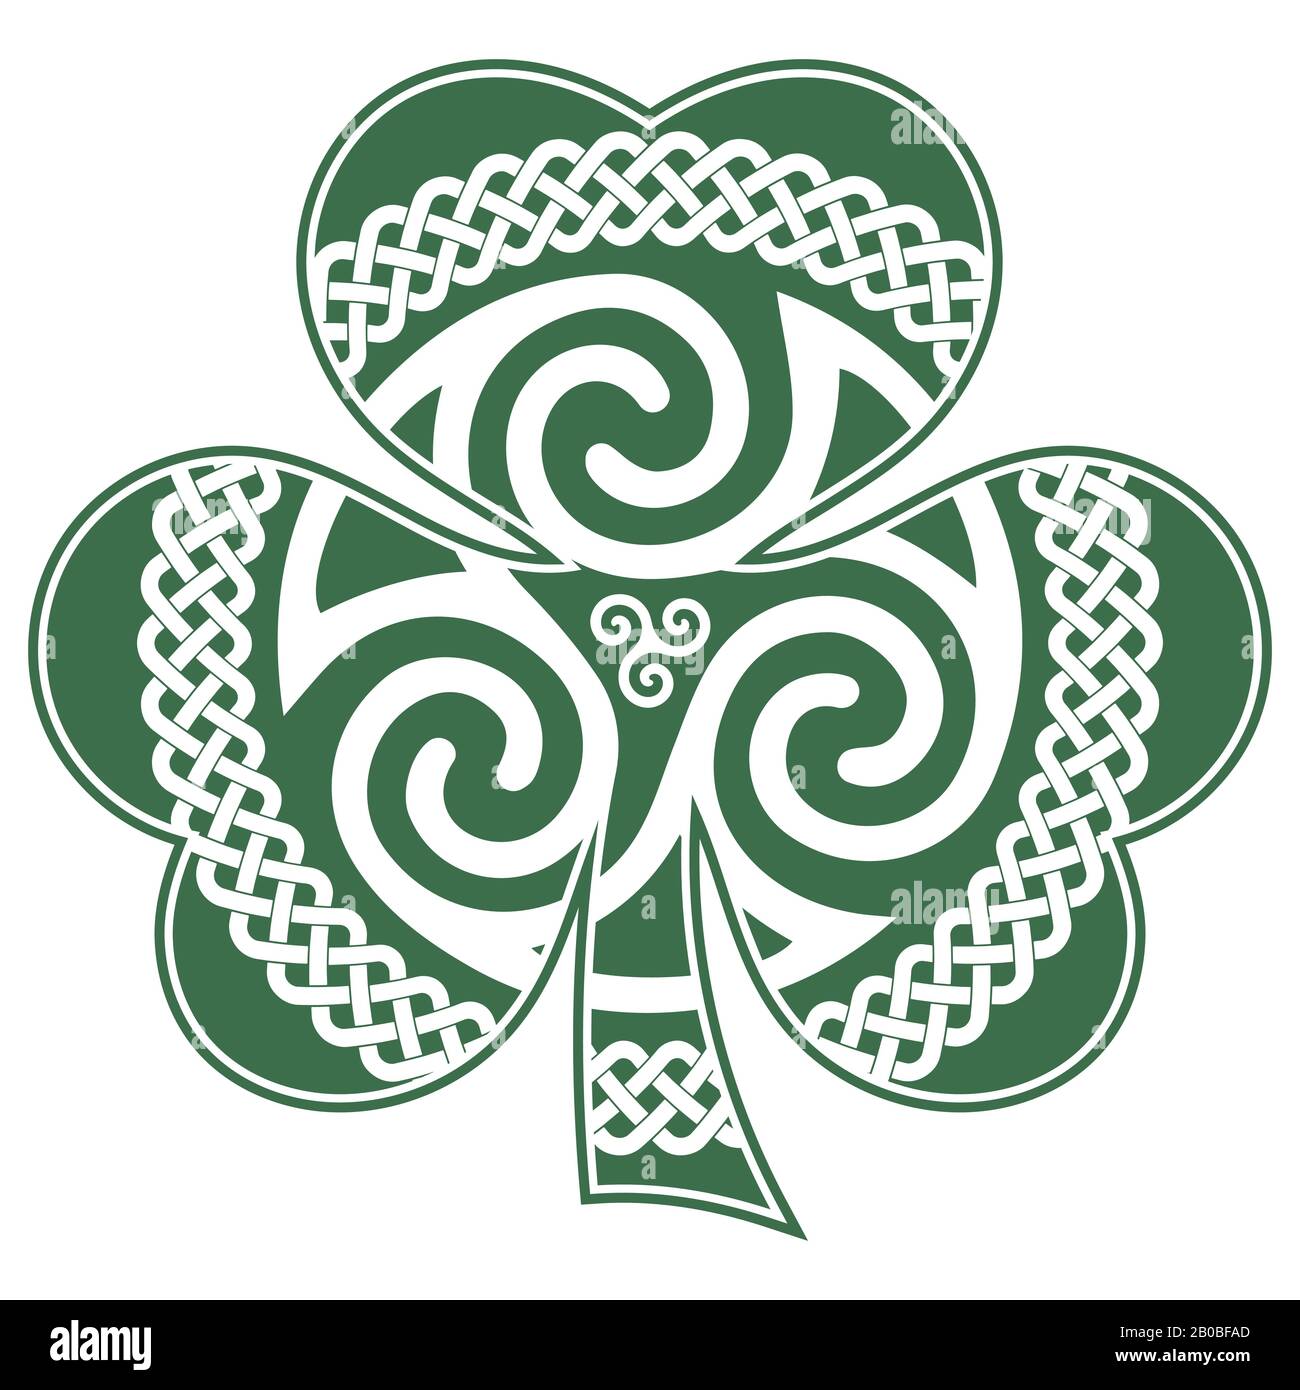 Irisch-keltisches Design im Vintage-Stil, Retro-Stil, Kleeblatt im Celtic-Stil. Irisches Symbol für das fest von St. Patrick Stock Vektor